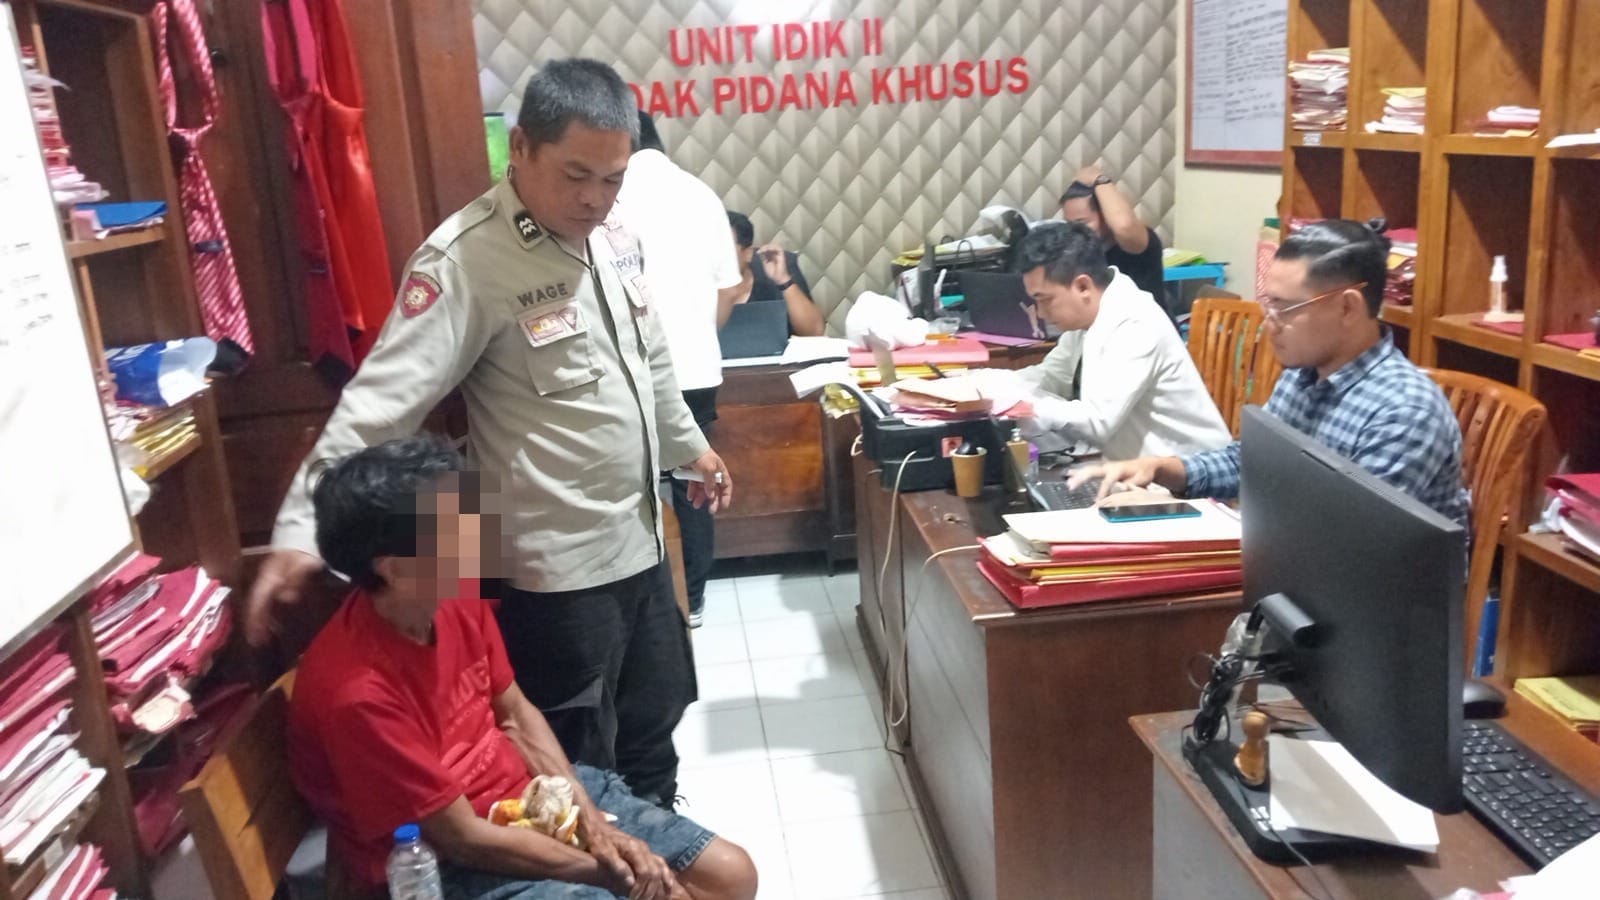 Asyik Rekap Togel di Warung, Pria Paruh Baya di Situbondo Ditangkap Polisi